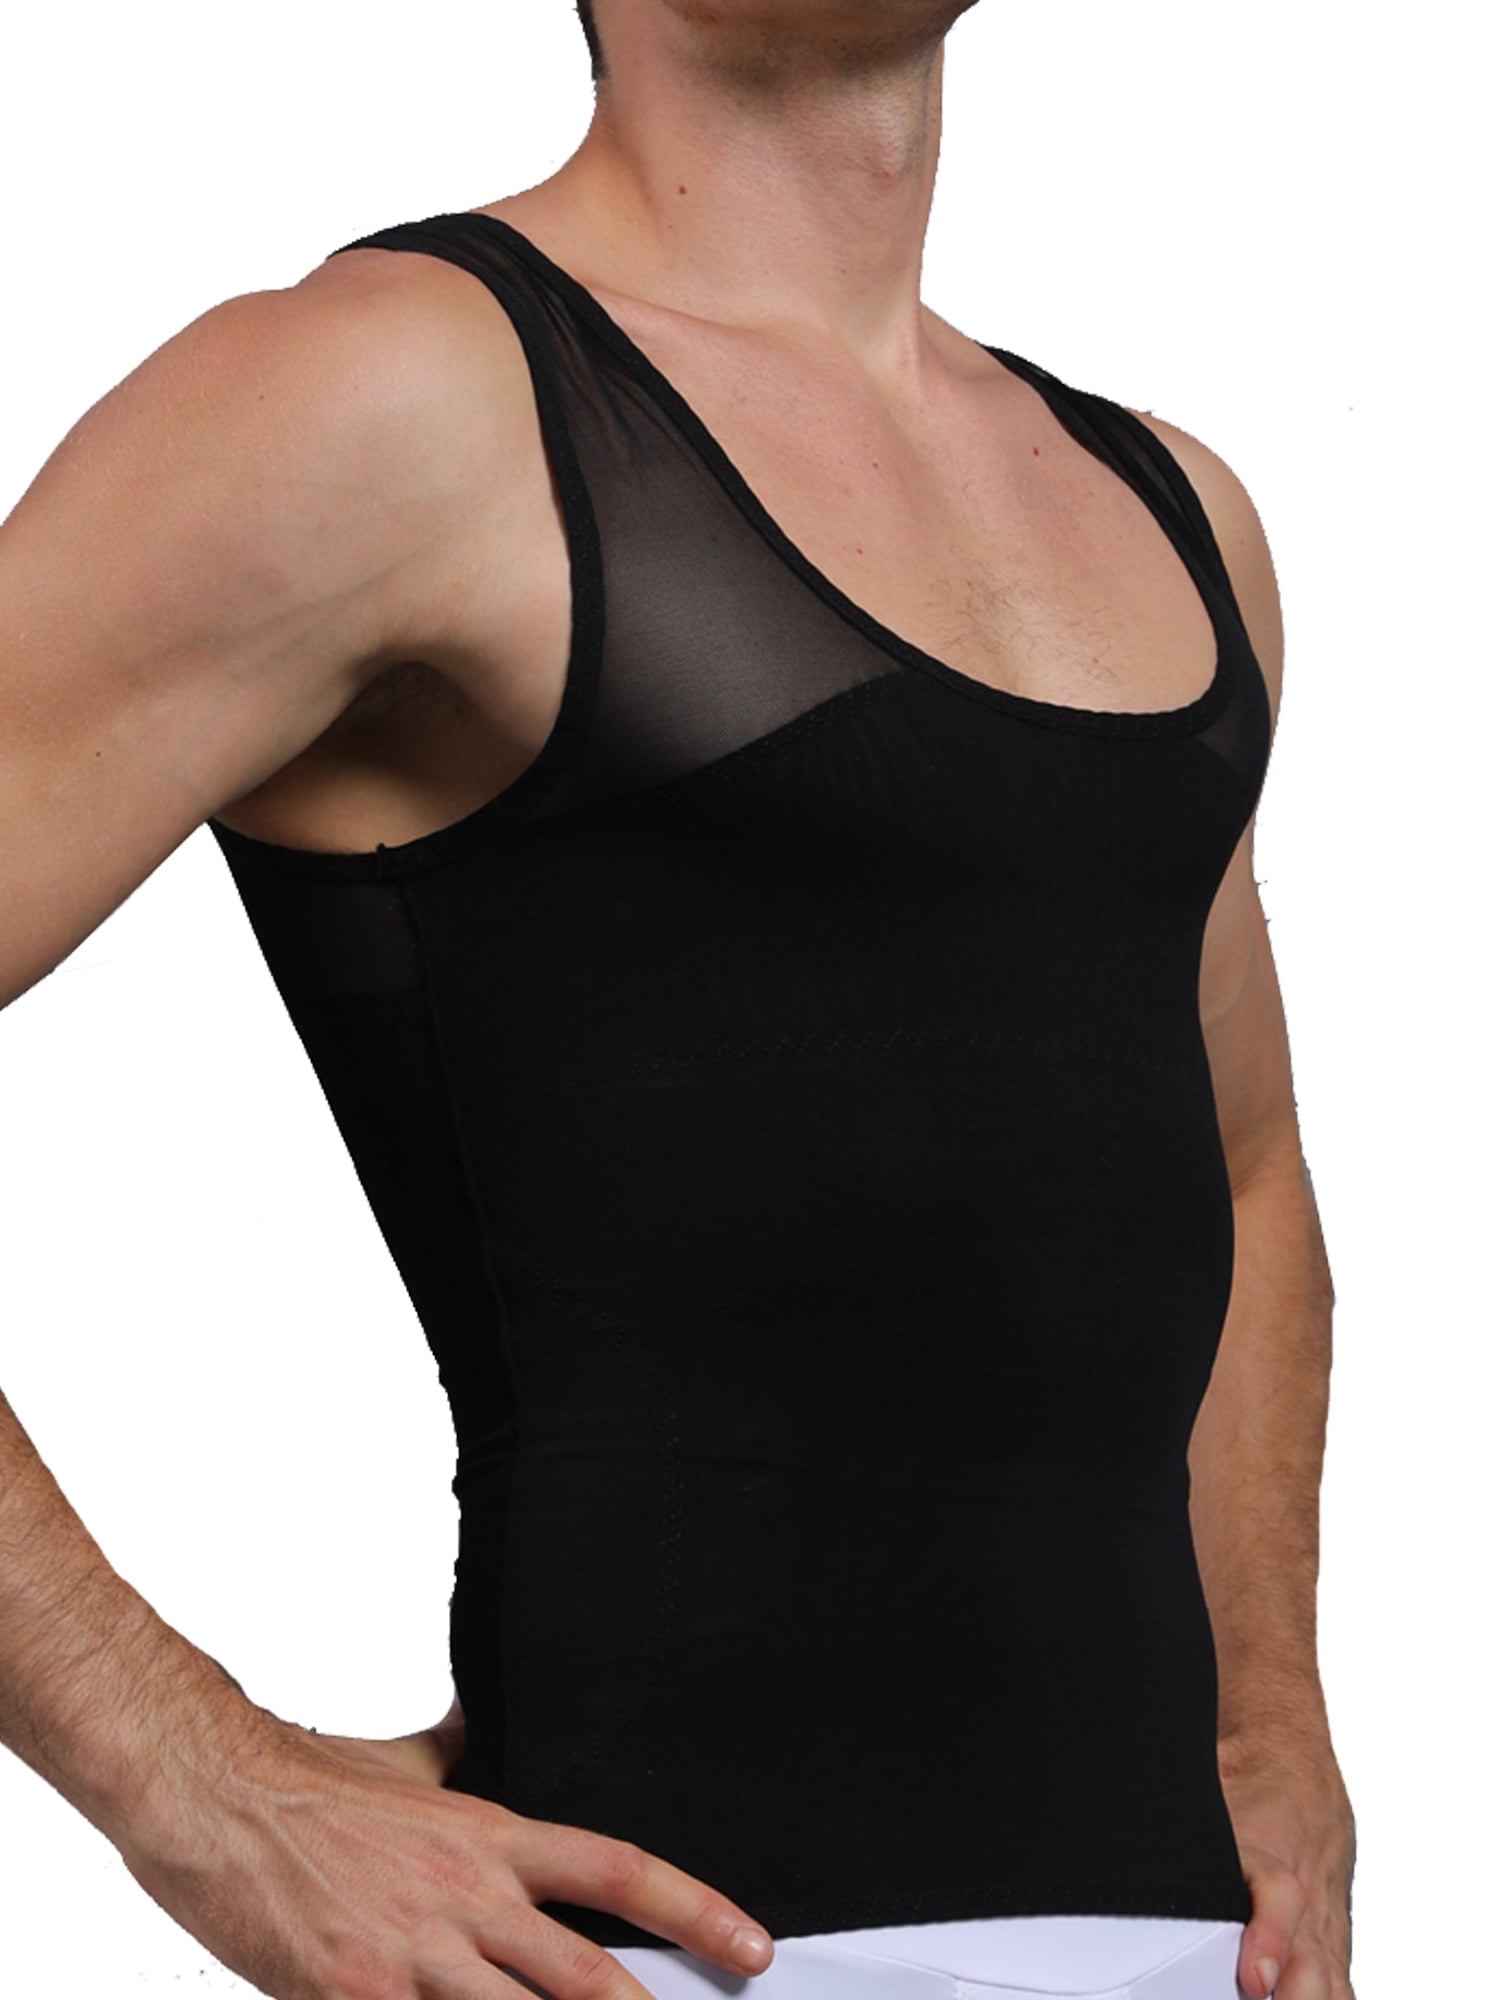 US Mens Slimming Body Shaper Gynecomastia Vest Shirt Tank Top Compression Corset 